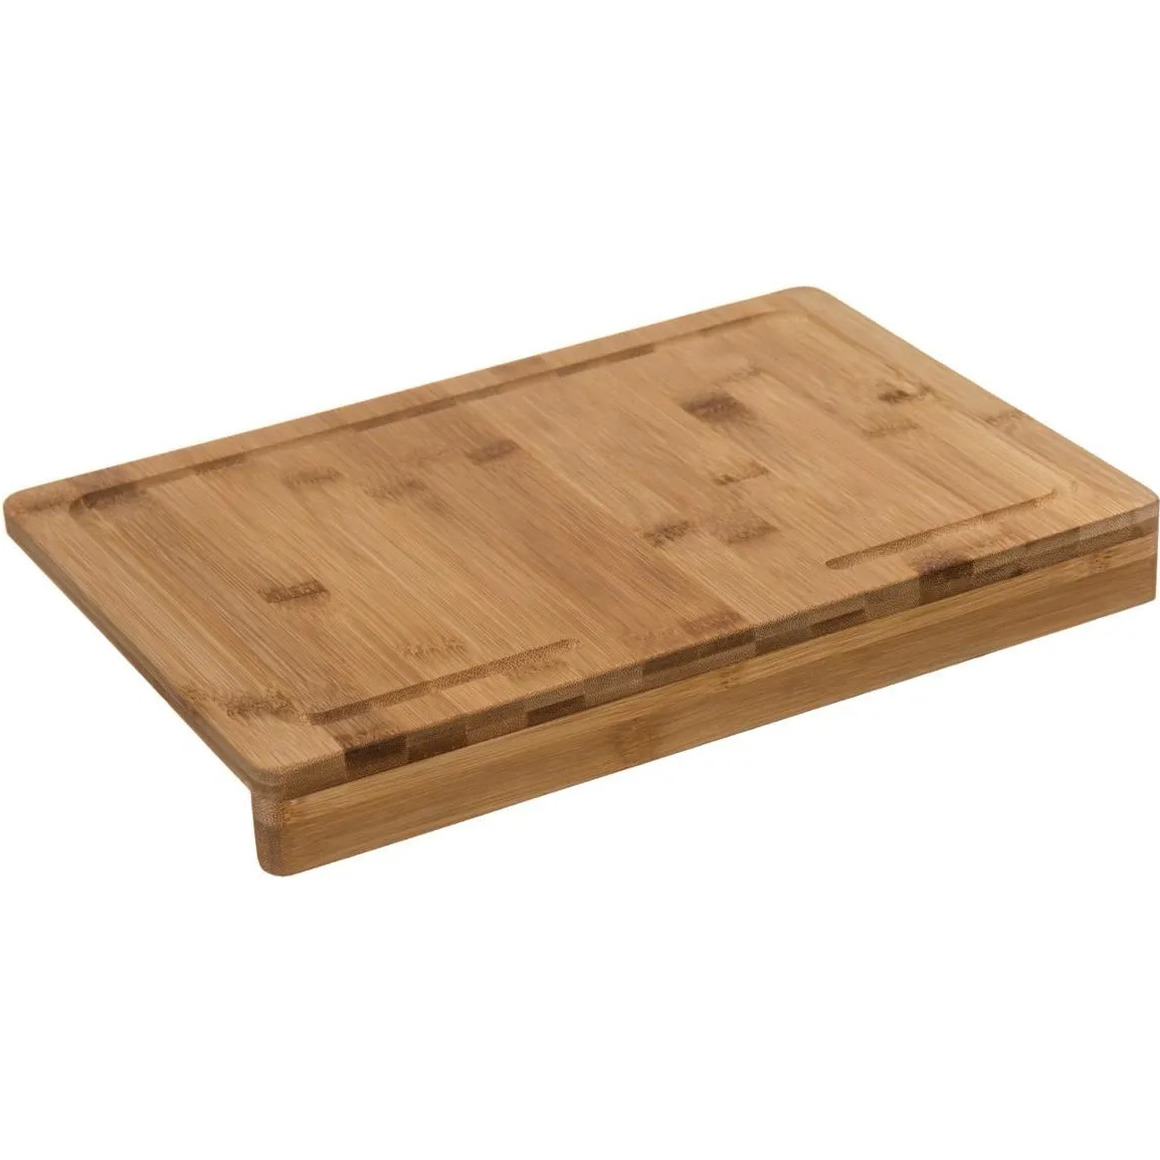 Snijplank met stoprand 35 x 24 cm van bamboe hout